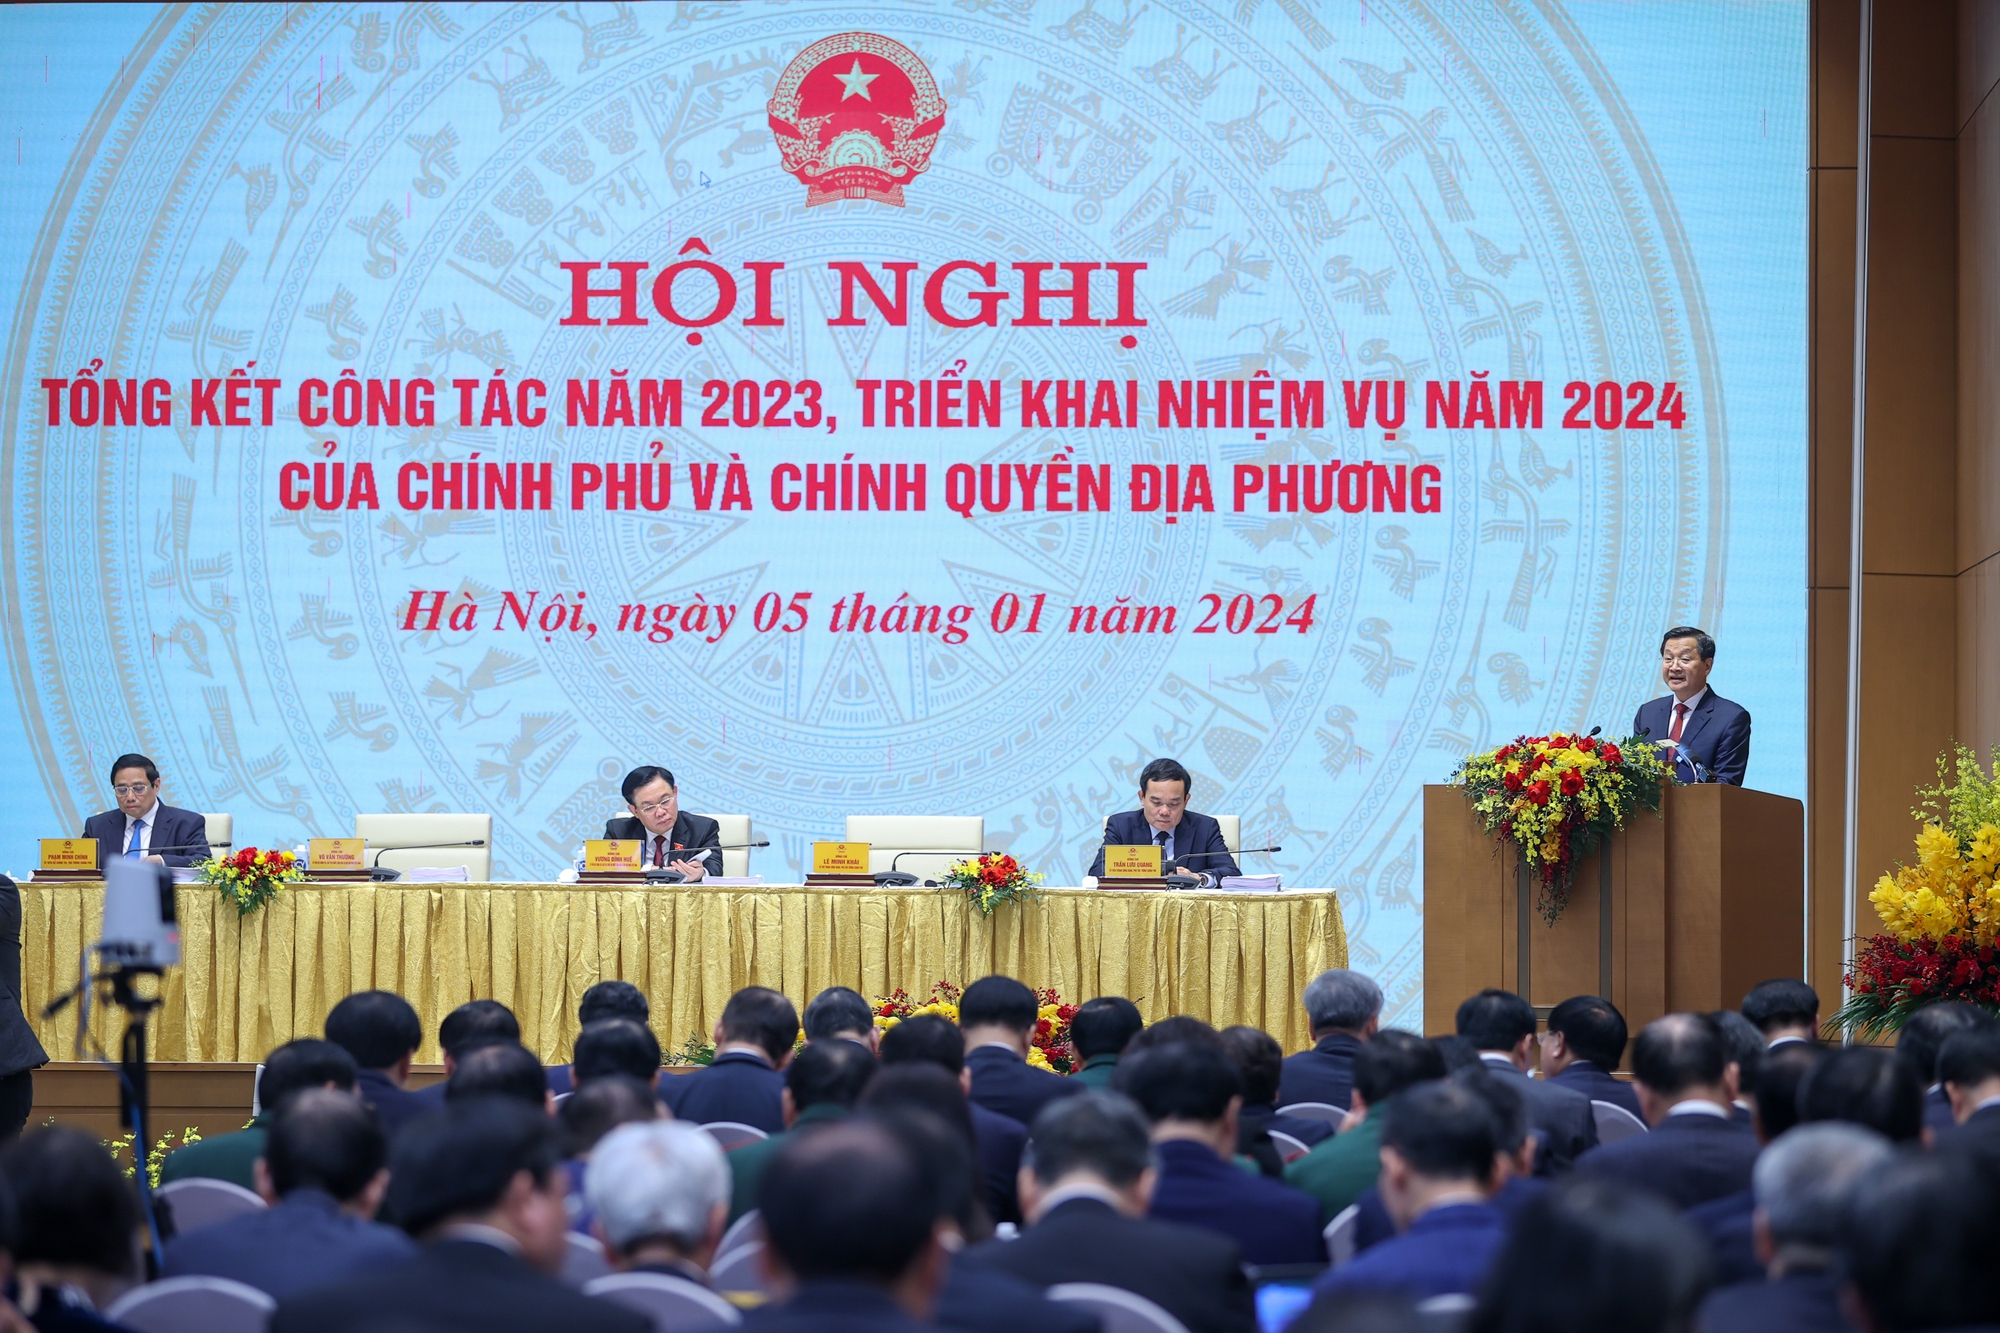 Kinh tế Việt Nam tiếp tục là điểm sáng, toàn bộ chỉ tiêu về xã hội đều đạt và vượt mục tiêu đề ra- Ảnh 3.